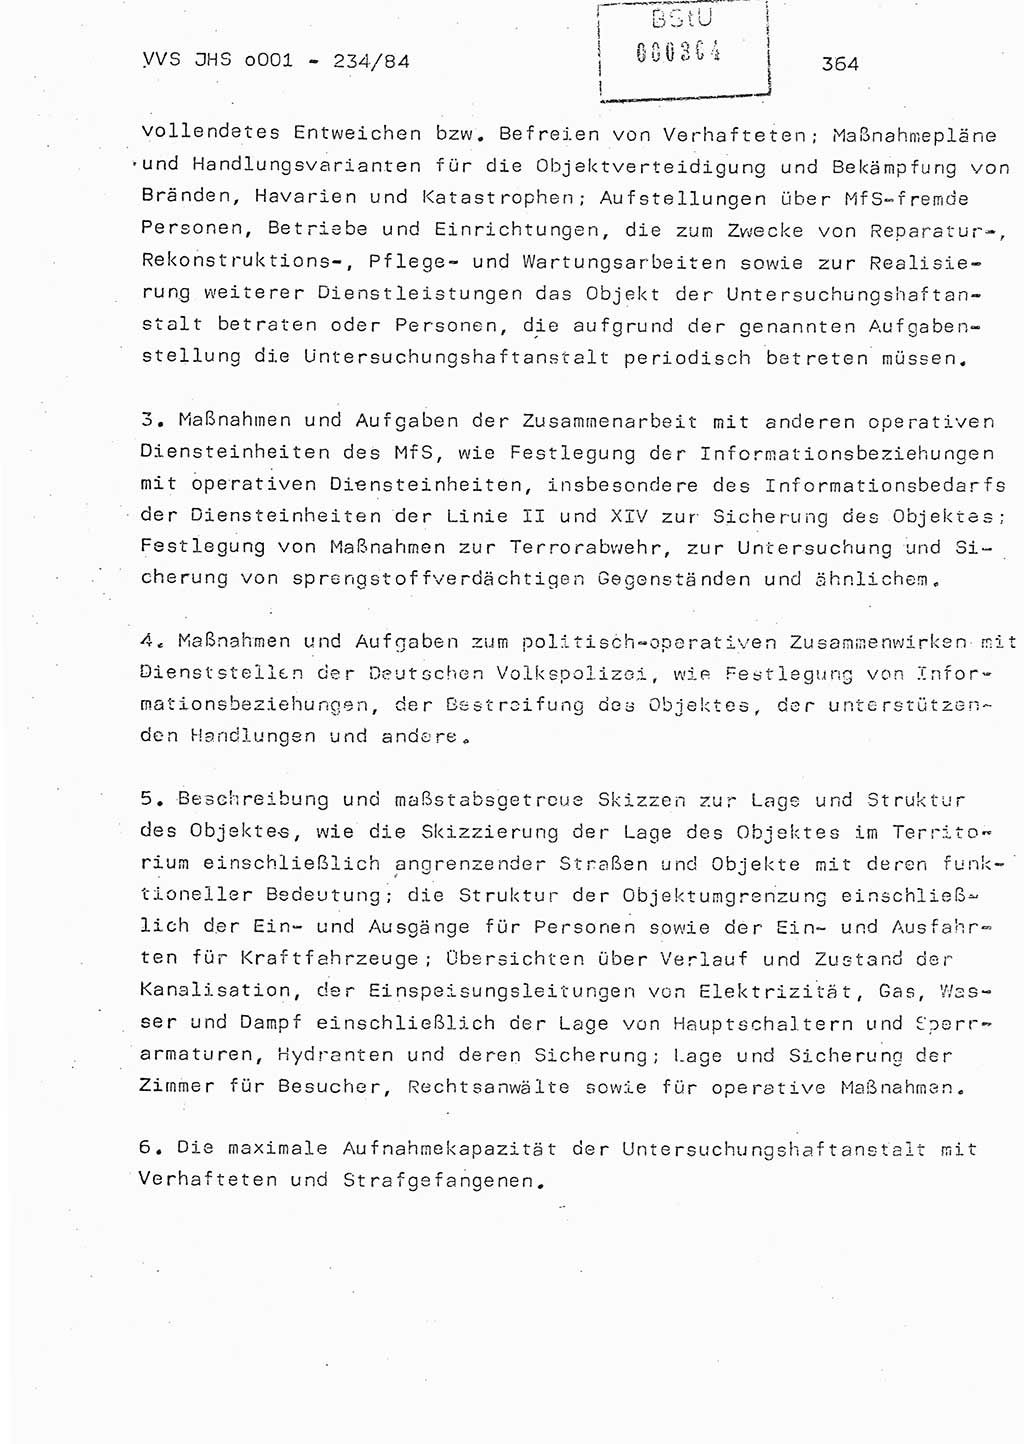 Dissertation Oberst Siegfried Rataizick (Abt. ⅩⅣ), Oberstleutnant Volkmar Heinz (Abt. ⅩⅣ), Oberstleutnant Werner Stein (HA Ⅸ), Hauptmann Heinz Conrad (JHS), Ministerium für Staatssicherheit (MfS) [Deutsche Demokratische Republik (DDR)], Juristische Hochschule (JHS), Vertrauliche Verschlußsache (VVS) o001-234/84, Potsdam 1984, Seite 364 (Diss. MfS DDR JHS VVS o001-234/84 1984, S. 364)